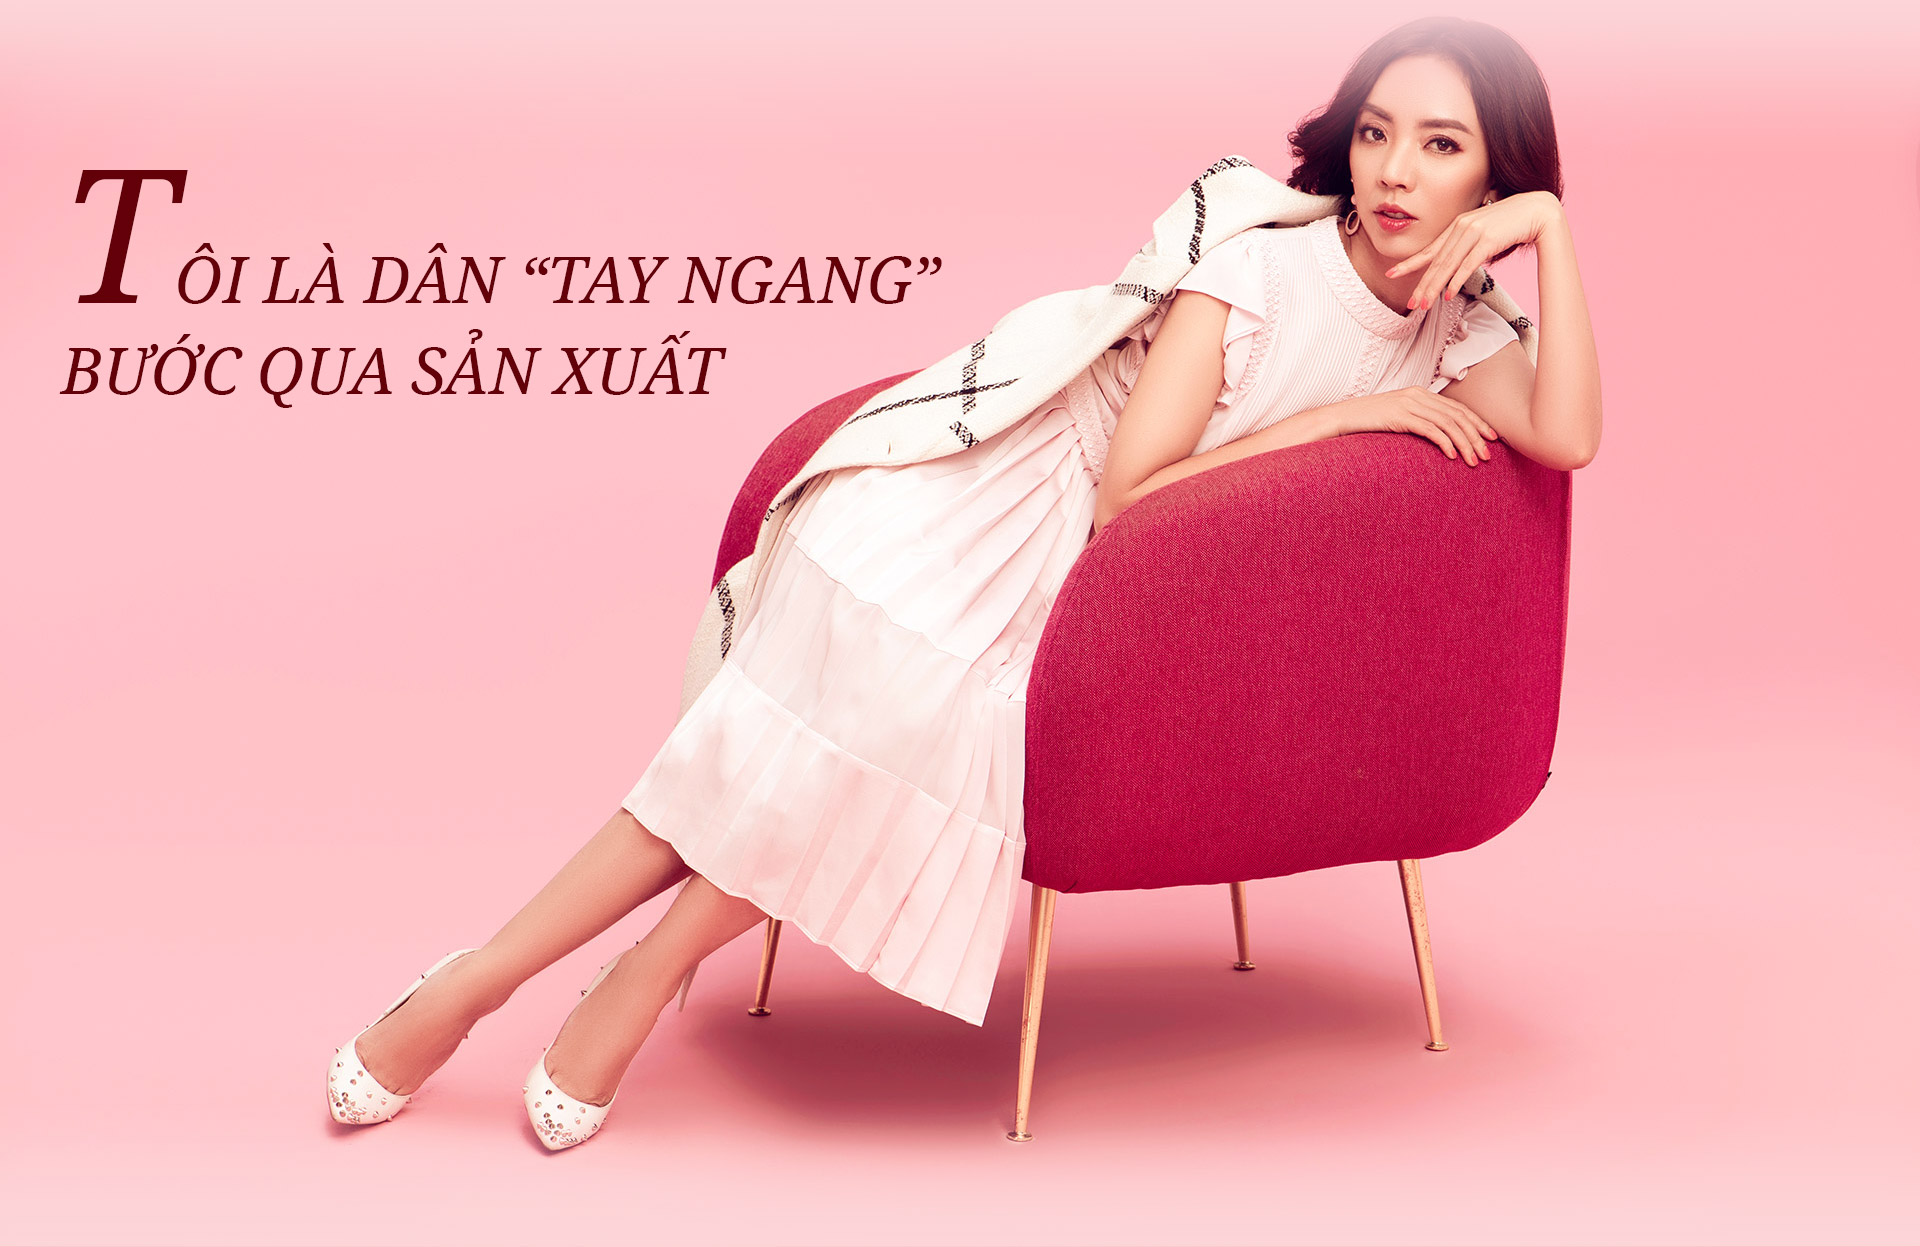 “Hoa hậu hài” Thu Trang: Chồng làm gì bên ngoài mặc kệ, nhưng phải mang tiền về - 2